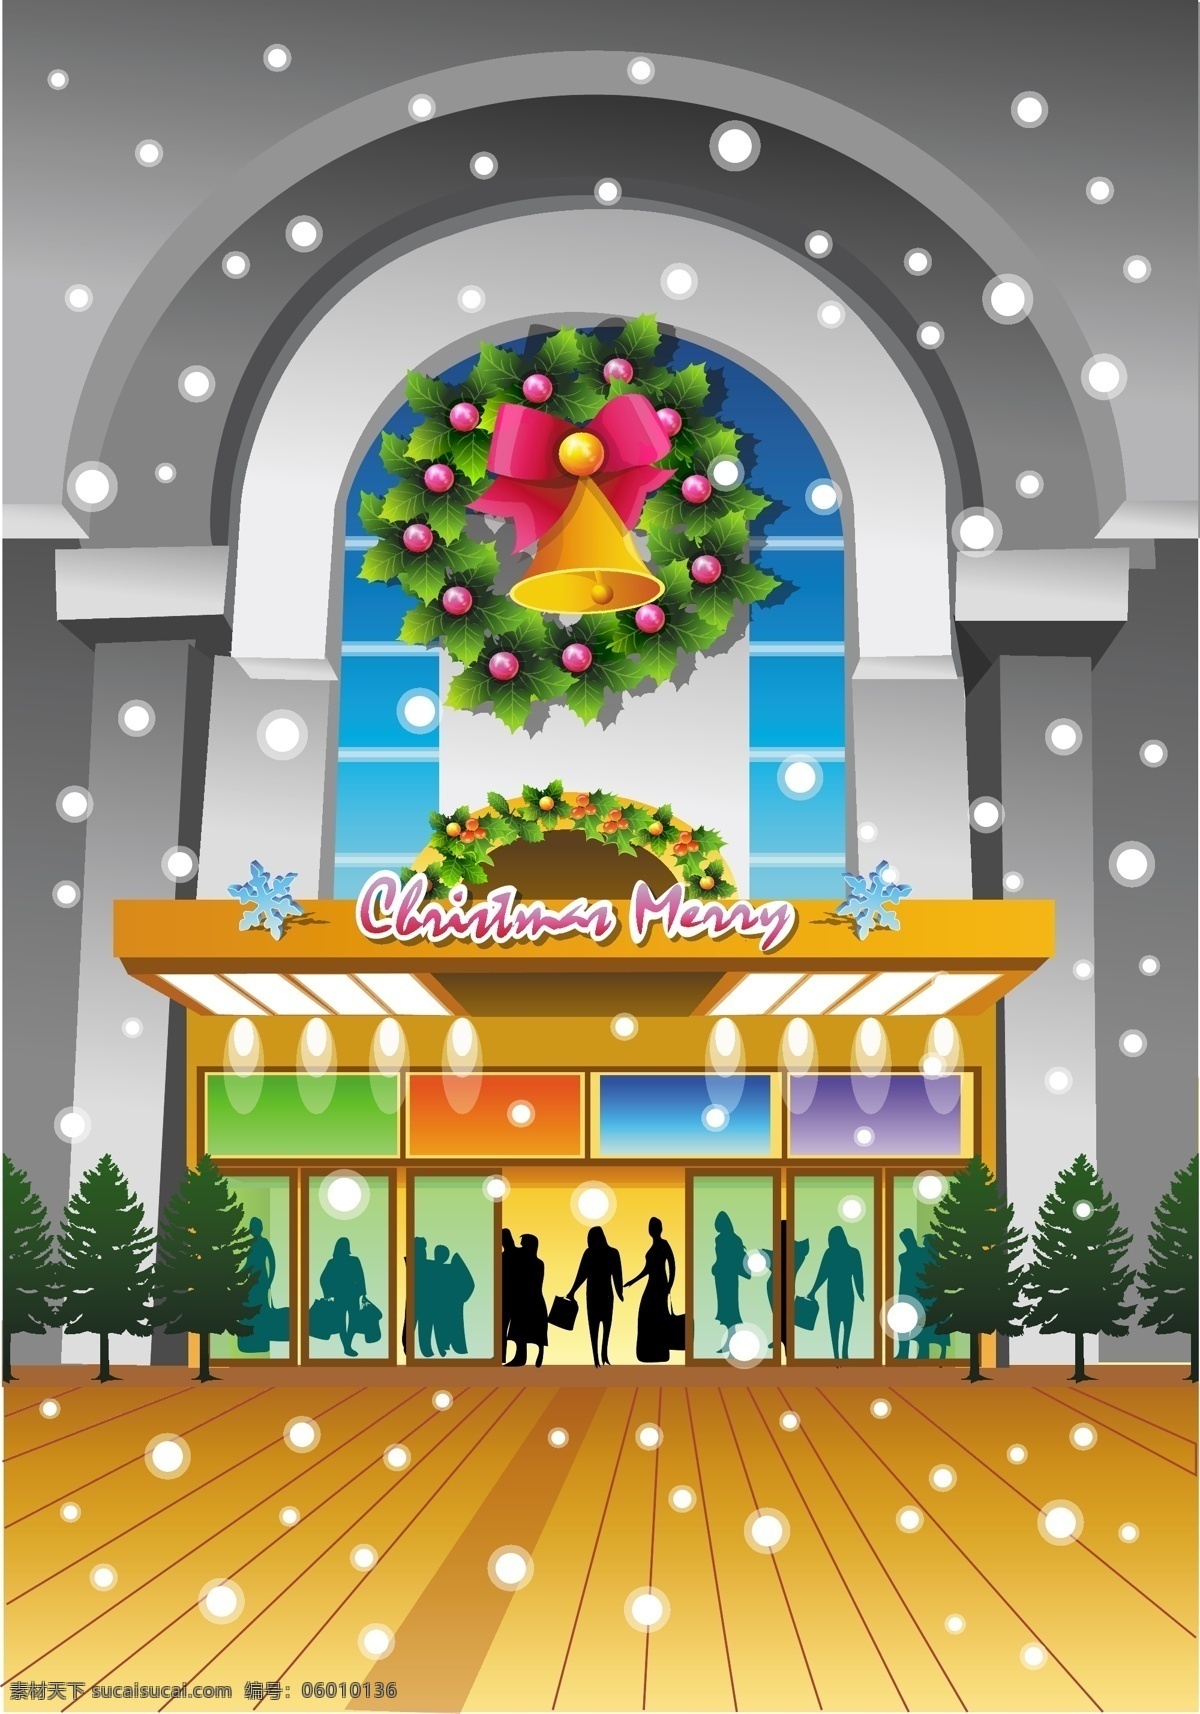 圣诞 前夕 前门 商场 装修 背景壁纸 建筑与城市 庆典和聚会 圣诞节 节日和季节 杂项物品 装饰装潢 艺术载体 模板和模型